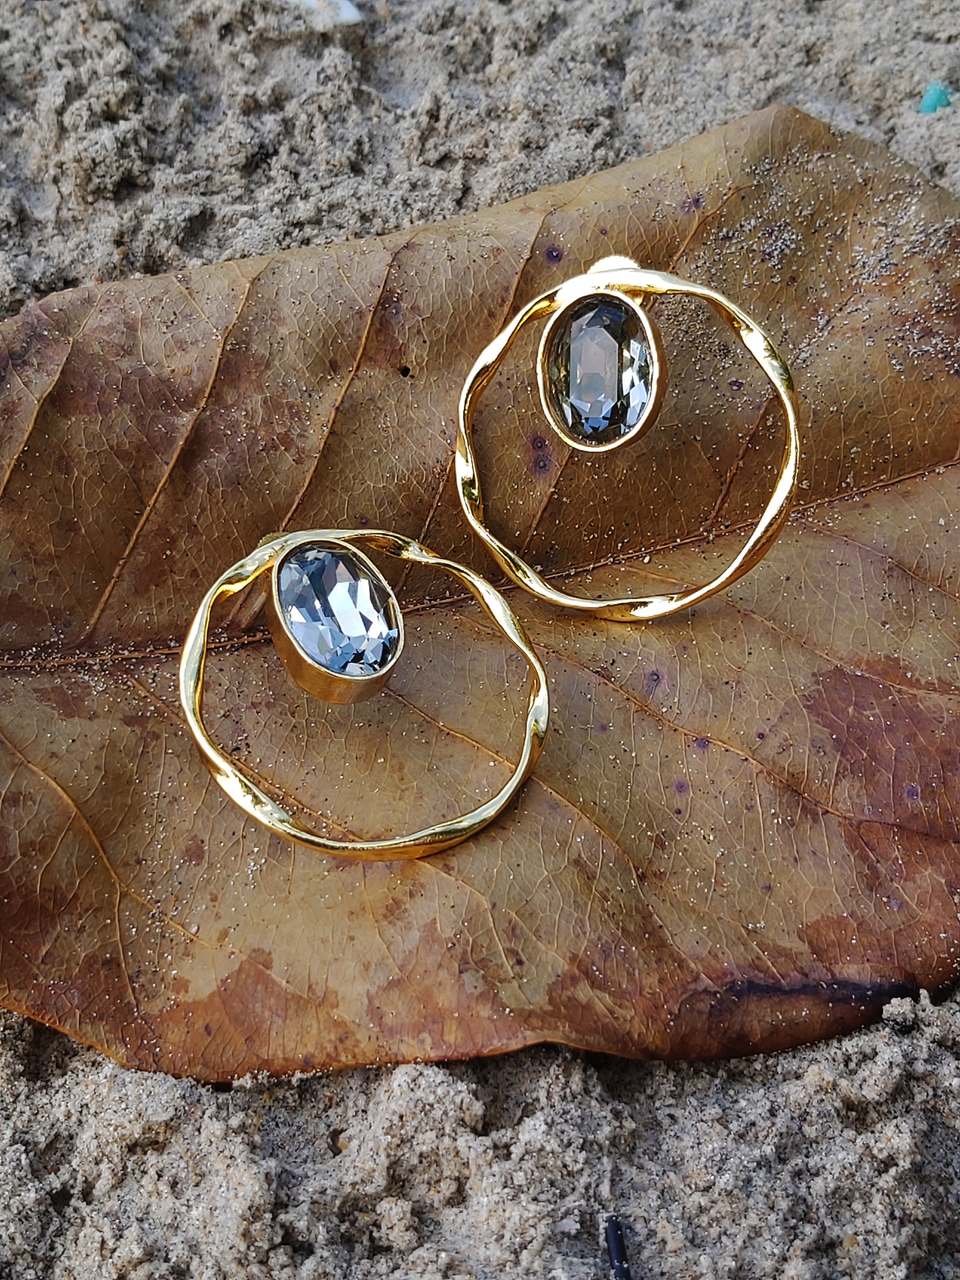 designer hoop earring designs in gold for female